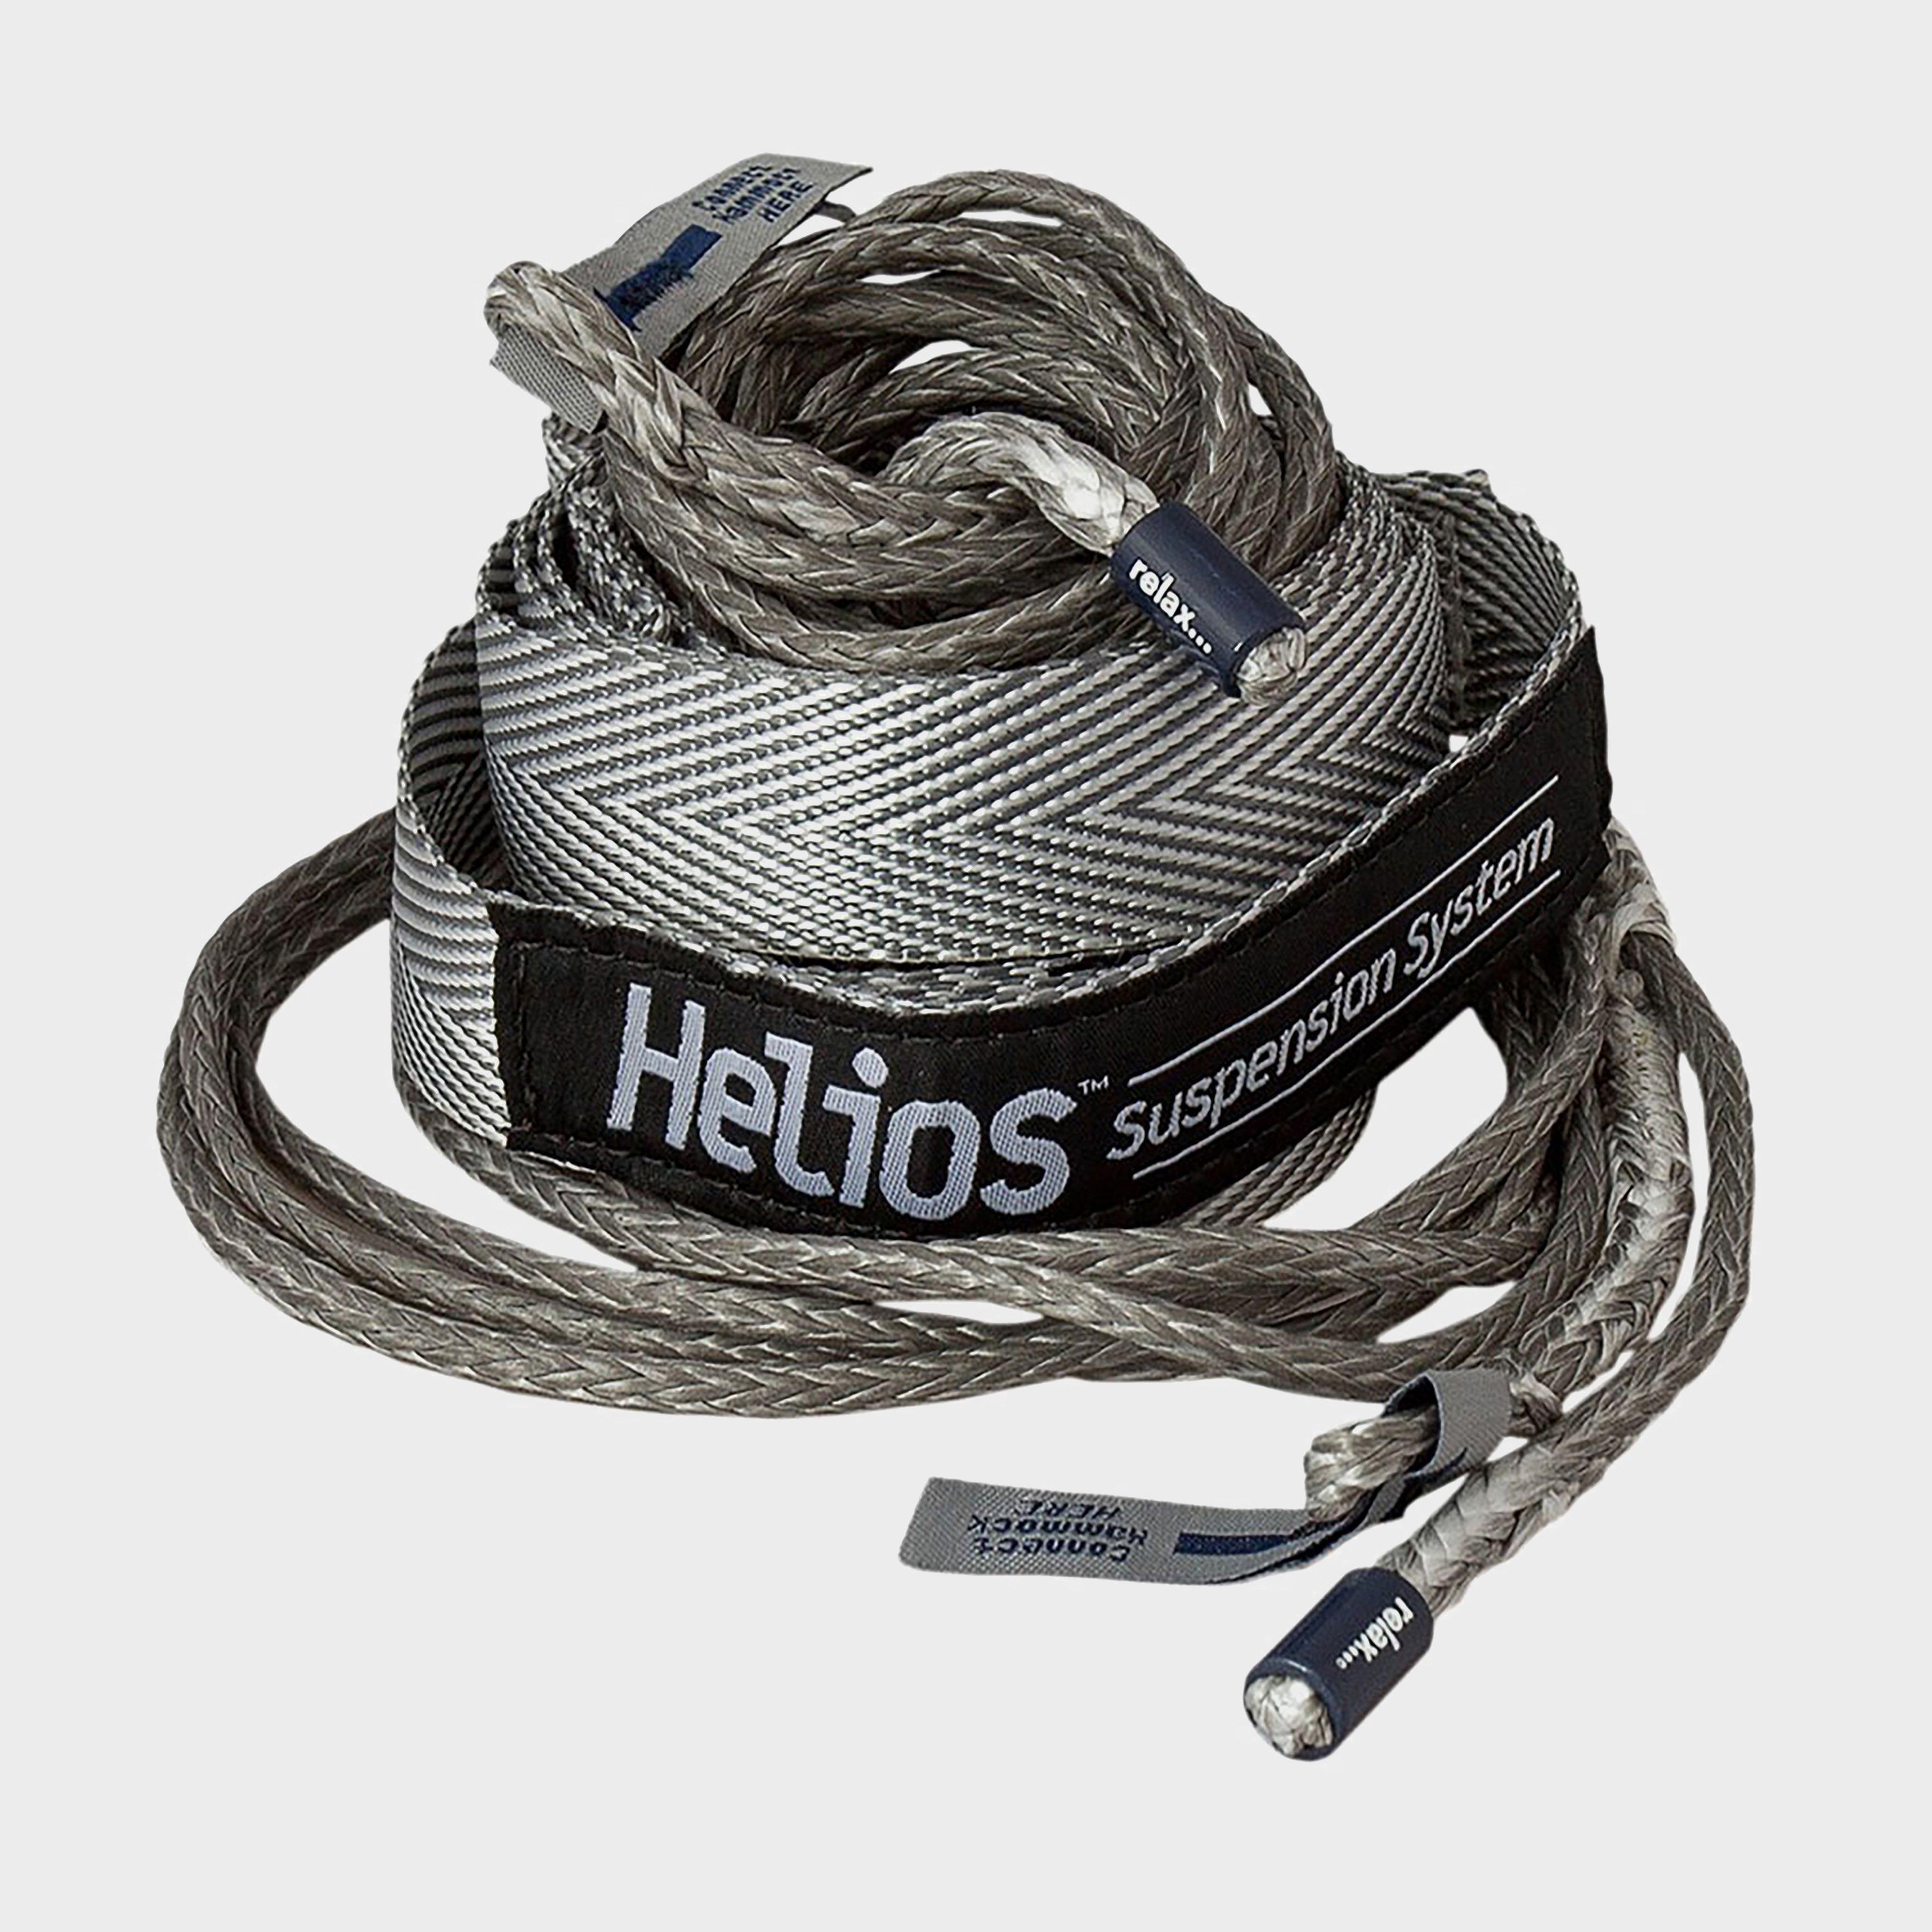  ENO Helios Suspension System, Grey